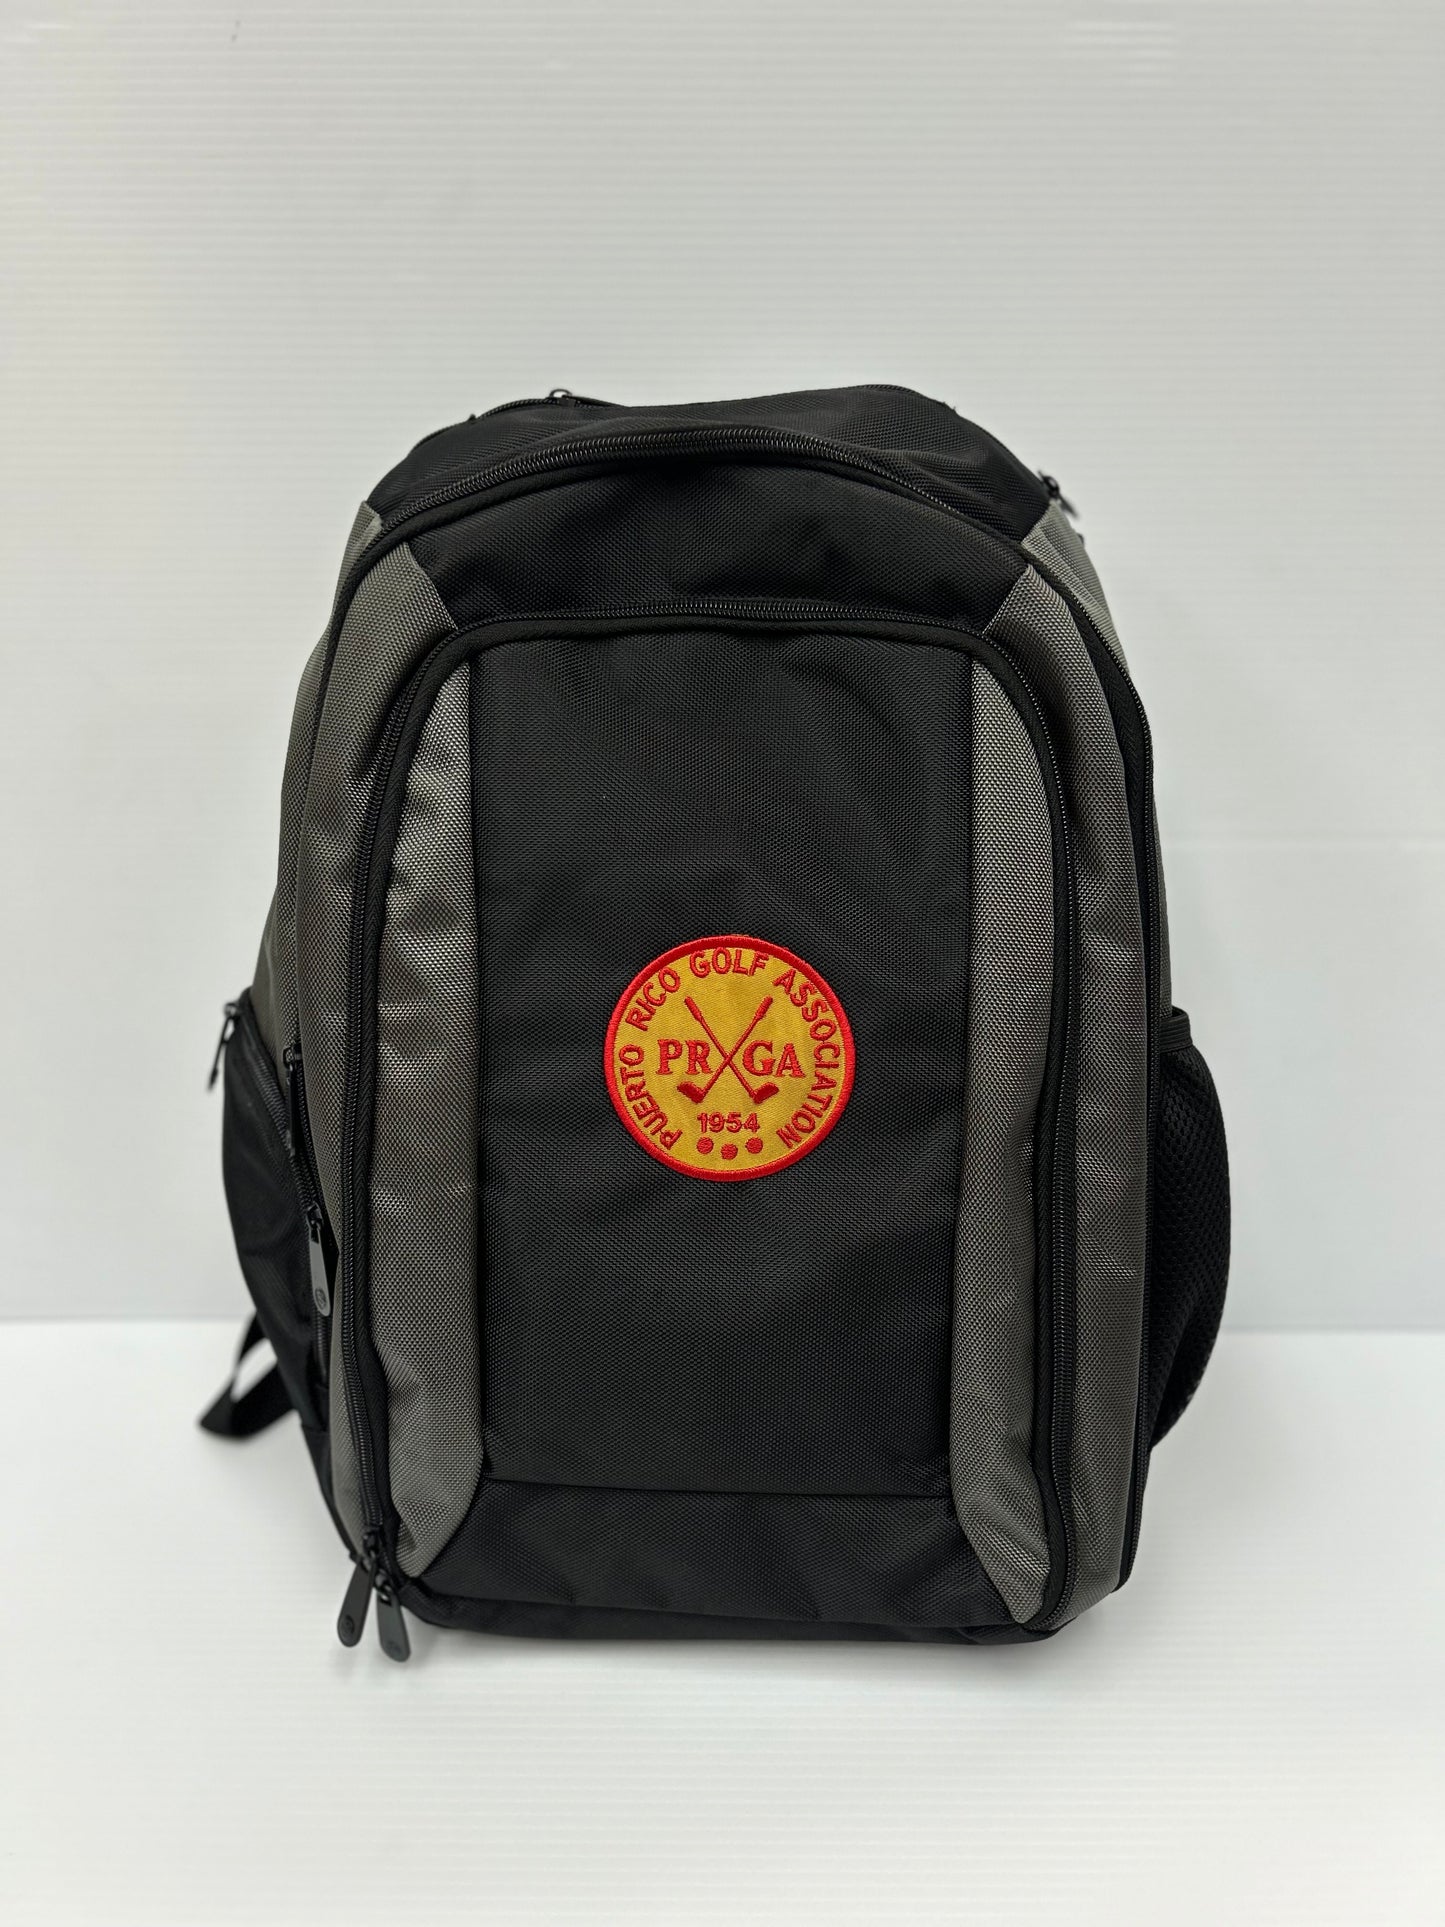 PRGA Backpack